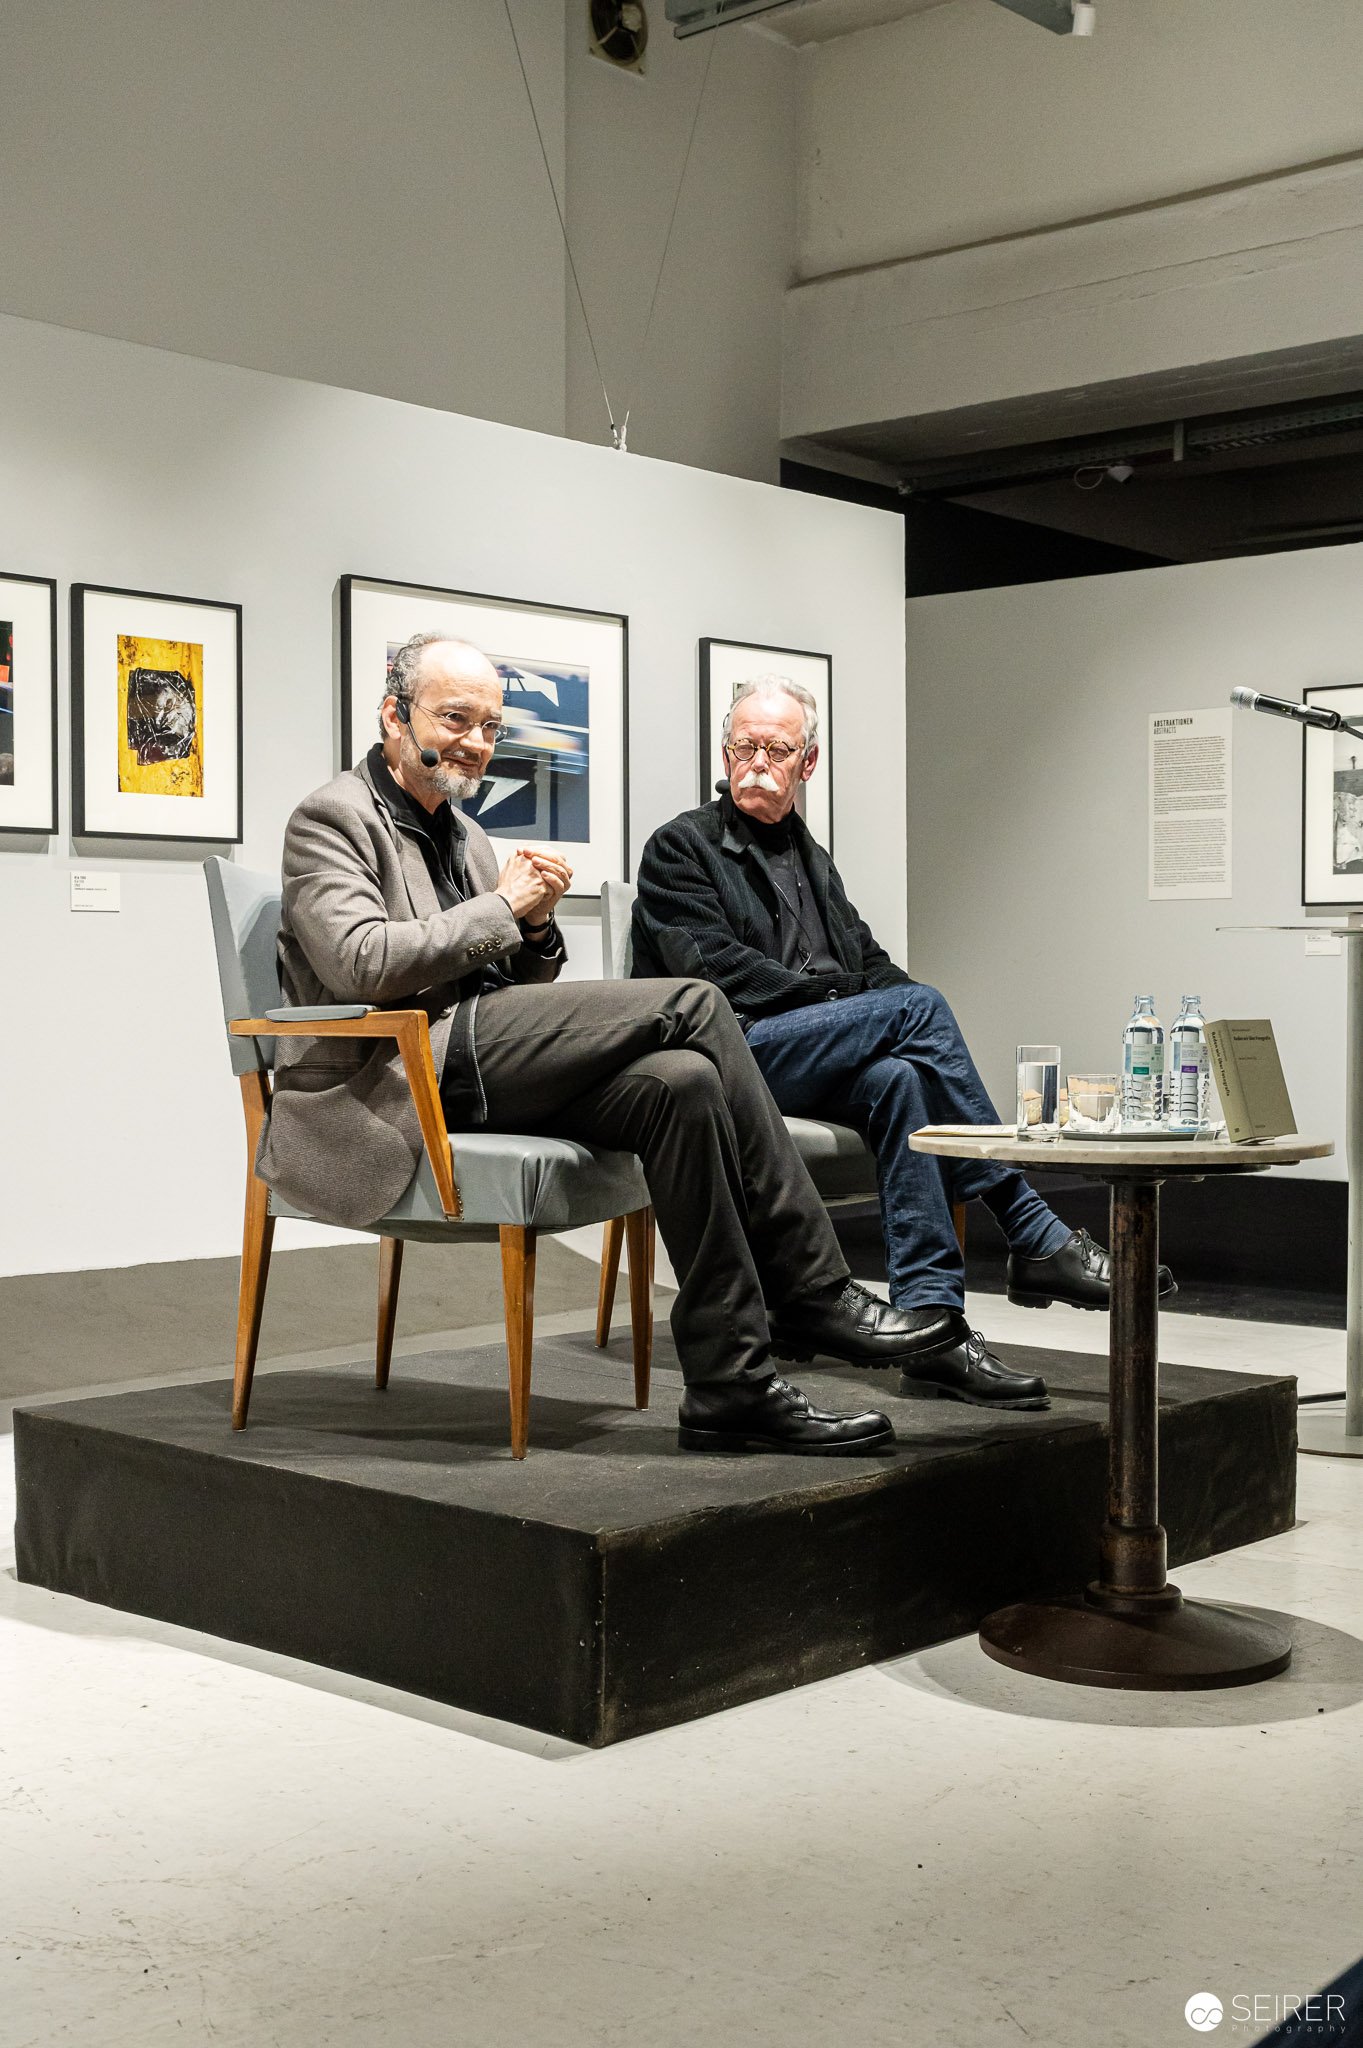 Buchpräsentation "Reden wir über Fotografie" von Hans-Michael Koetzle, Westlicht, Wien